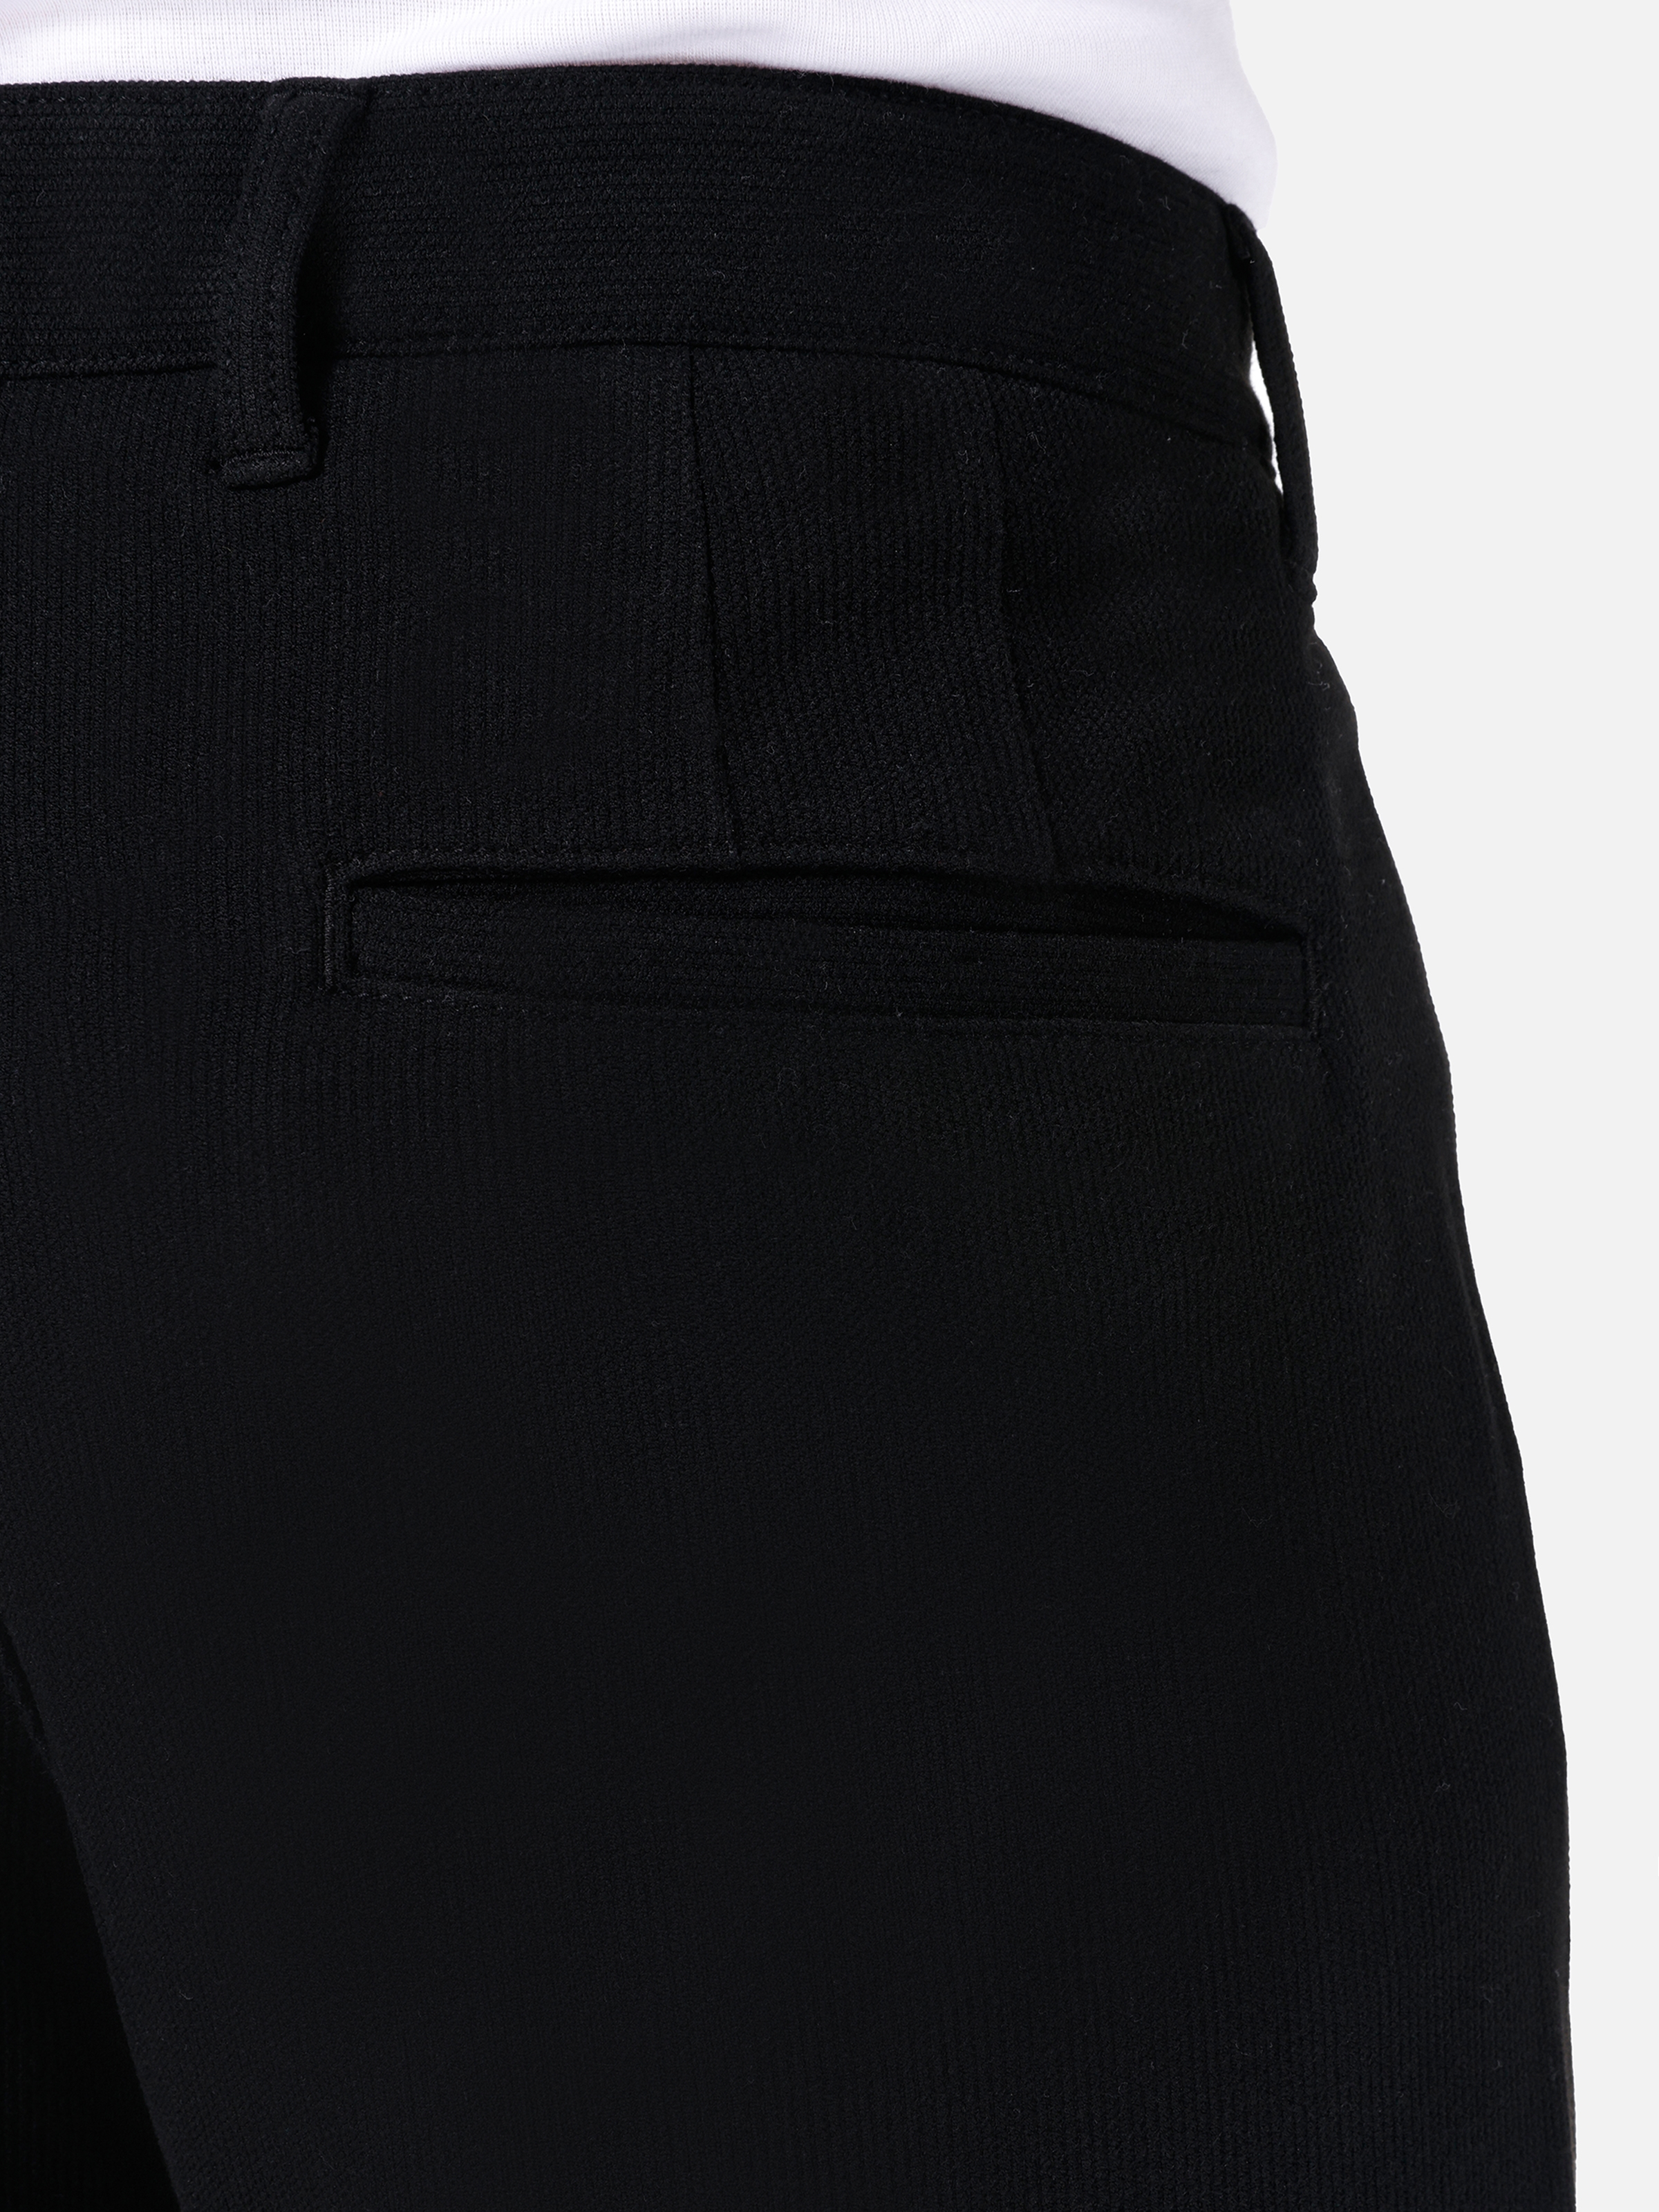 Afișați detalii pentru Pantaloni De Barbati Negru   